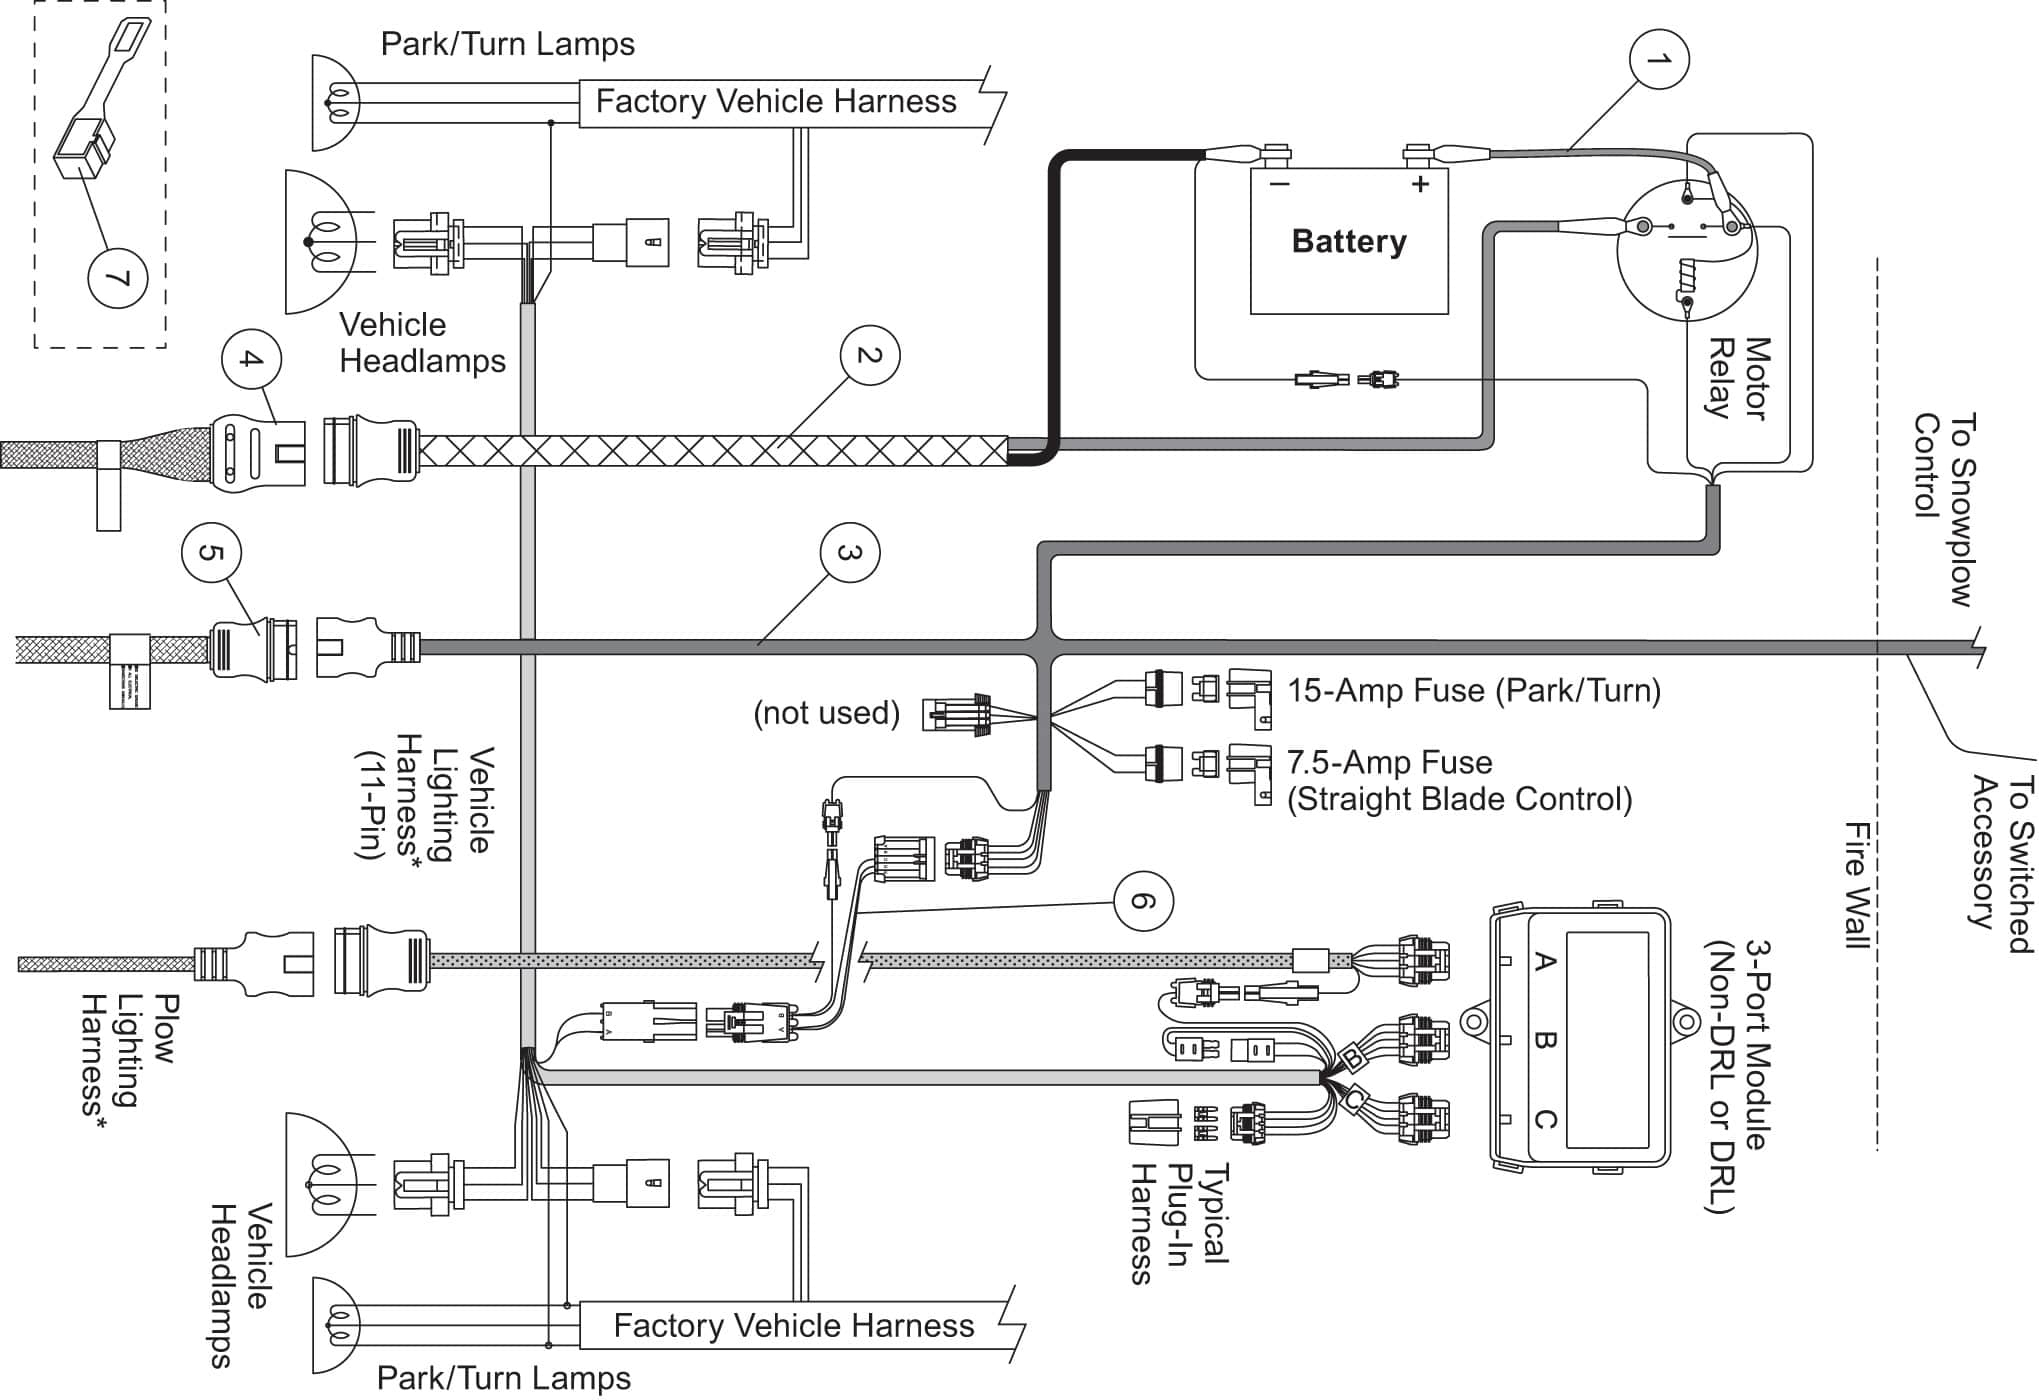 Western Snow Plow Pump Diagram | Wiring Diagram - Western Snow Plows Wiring Diagram